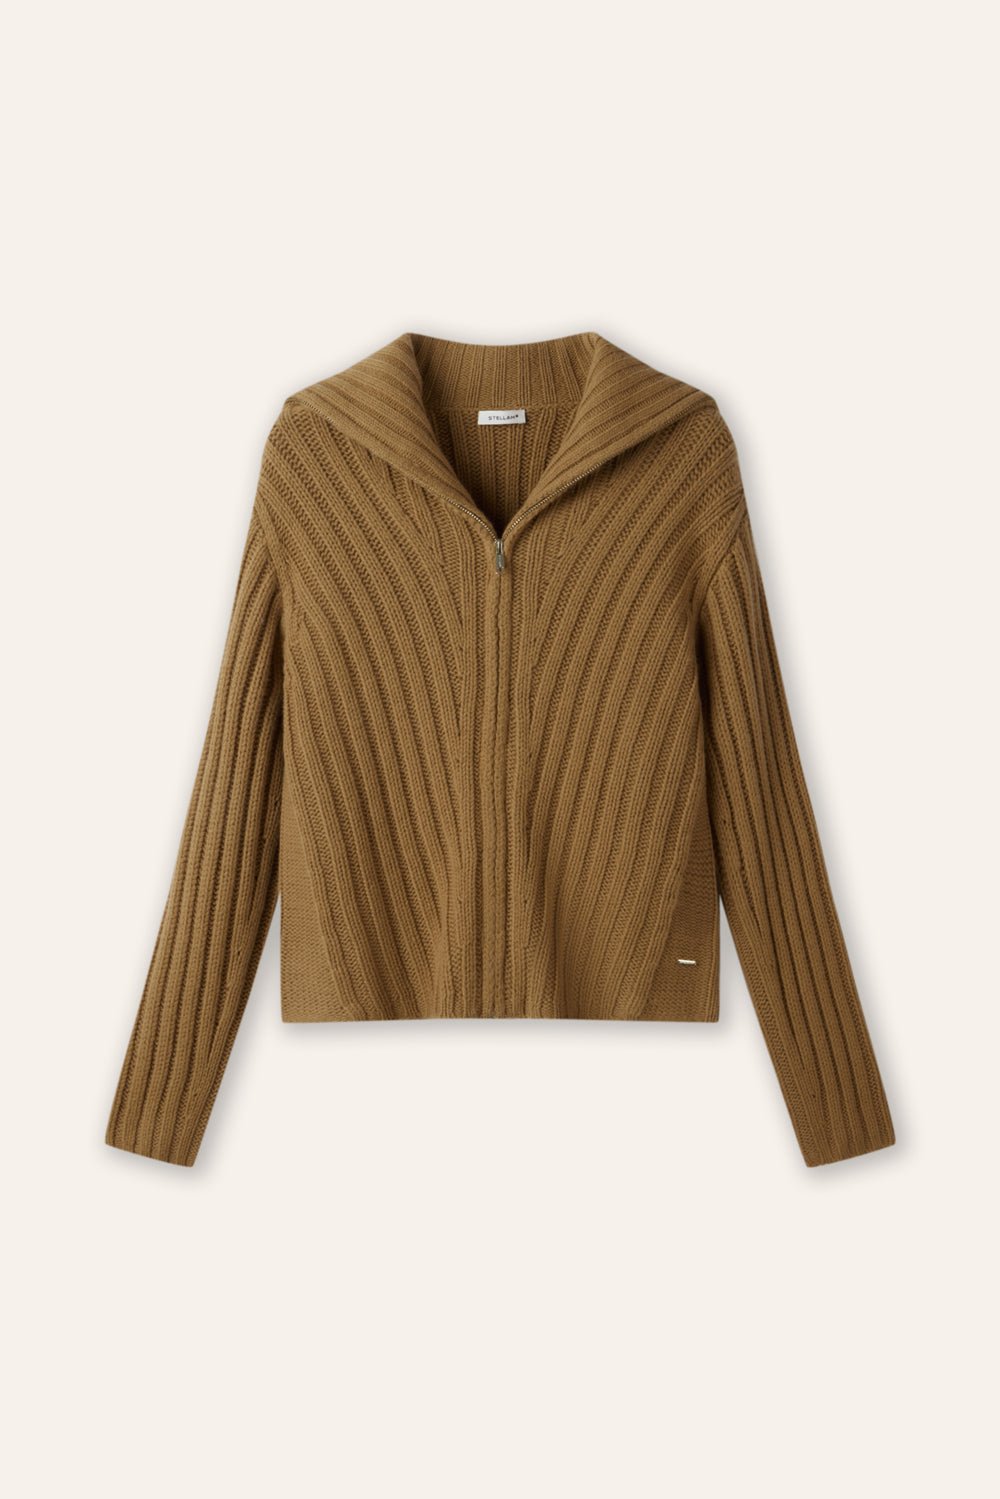 CATHY wool zip jacket (Camel) - STELLAM